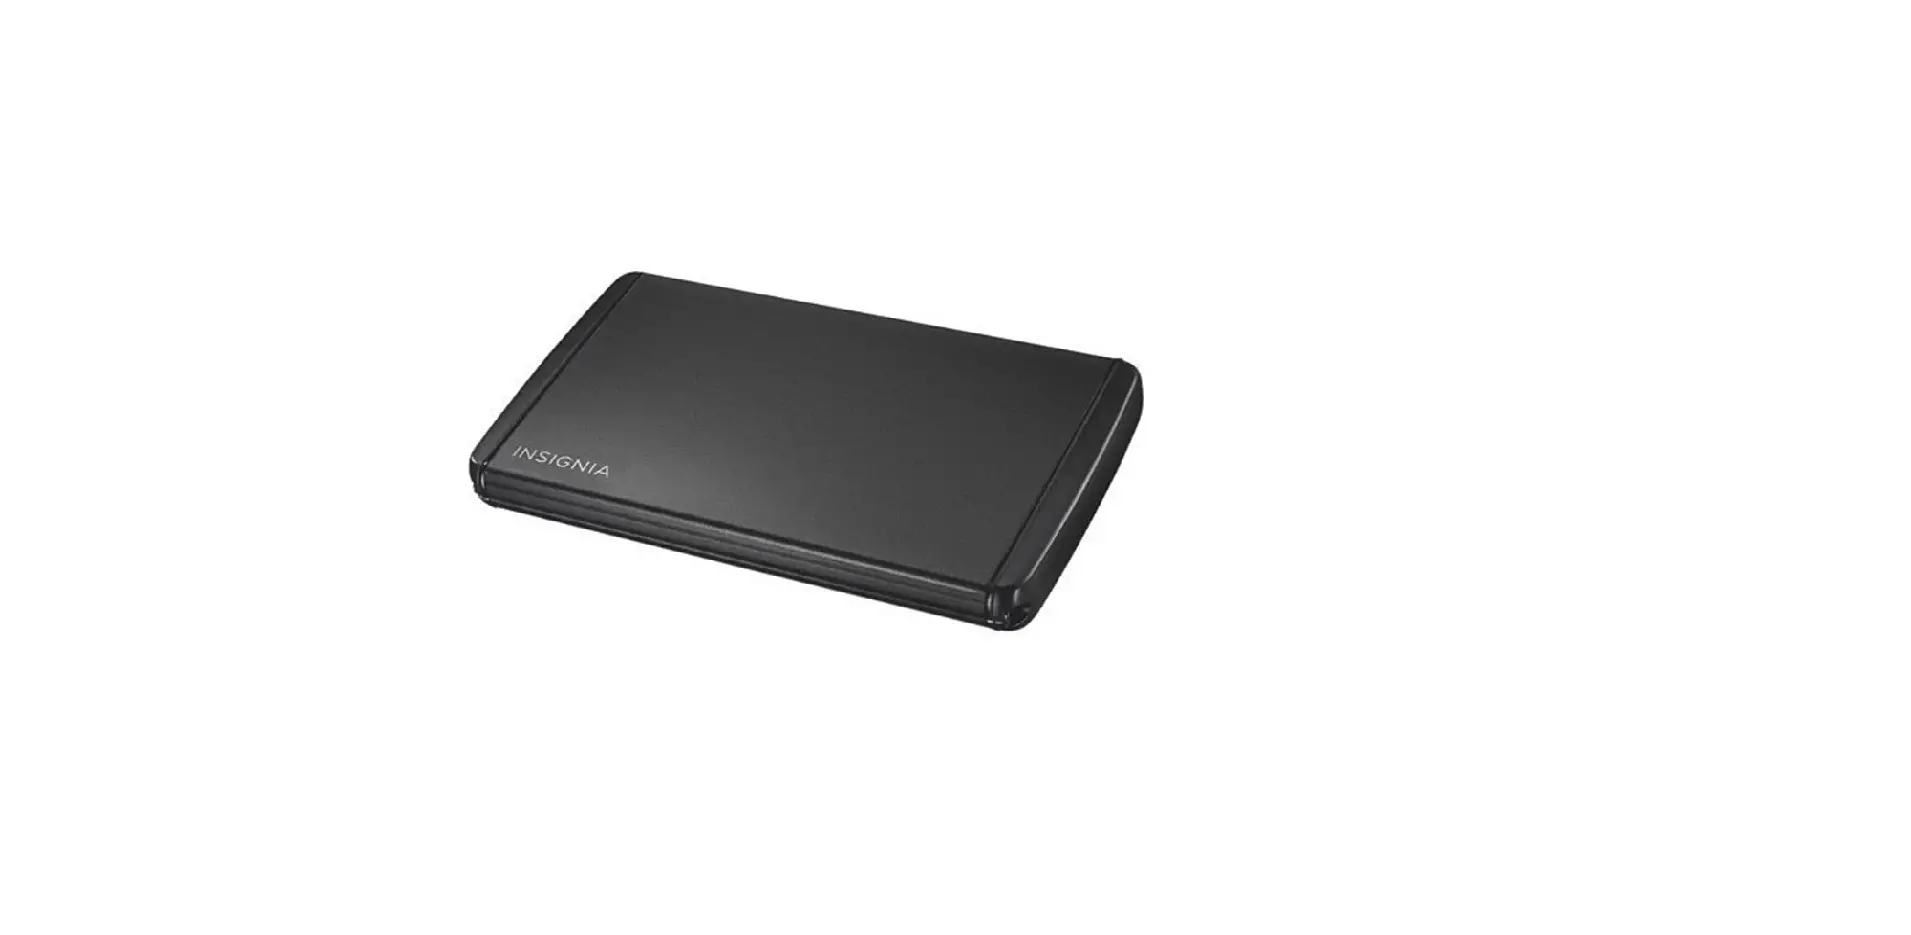 NS-PCHD235/ NS-PCHD235-C USB 3.0 Notebook Hard Disk Drive Enclosure